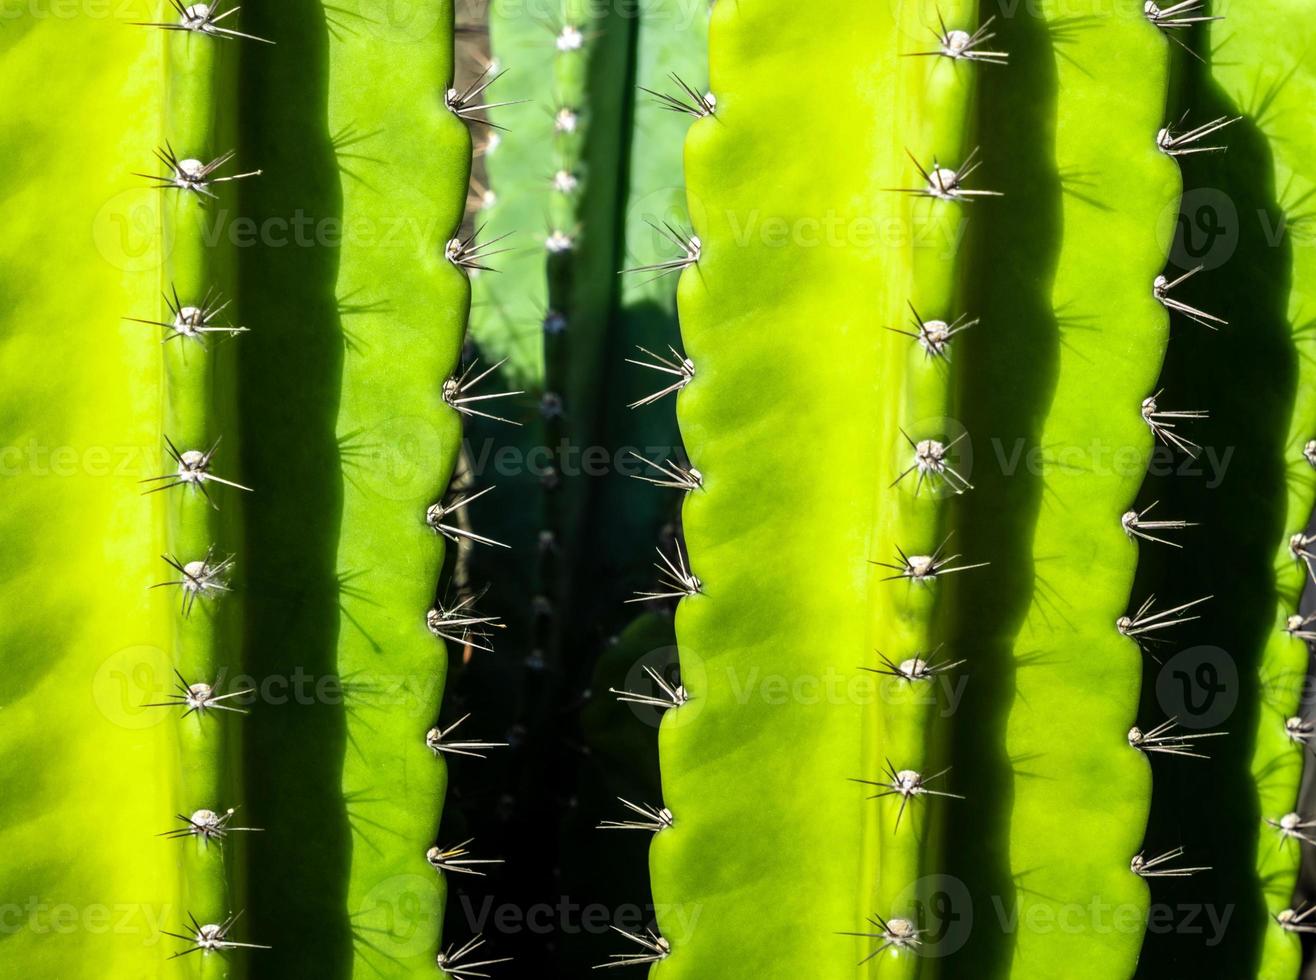 grön bakgrund av fylliga stjälkar och taggiga taggar av cereus peruvianus kaktus foto